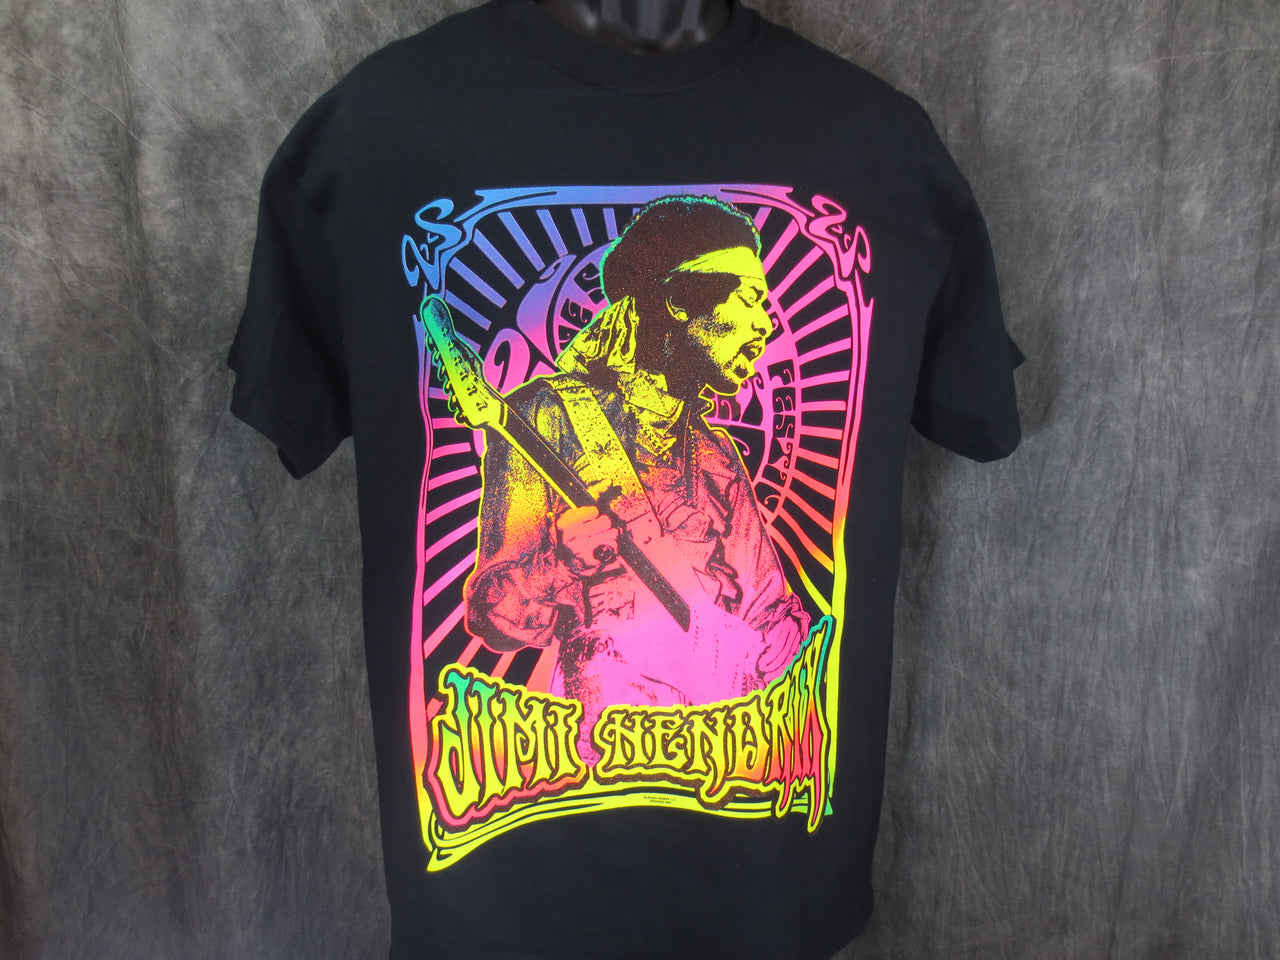 Jimi Hendrix Neon Concert tshirt - TshirtNow.net - 2